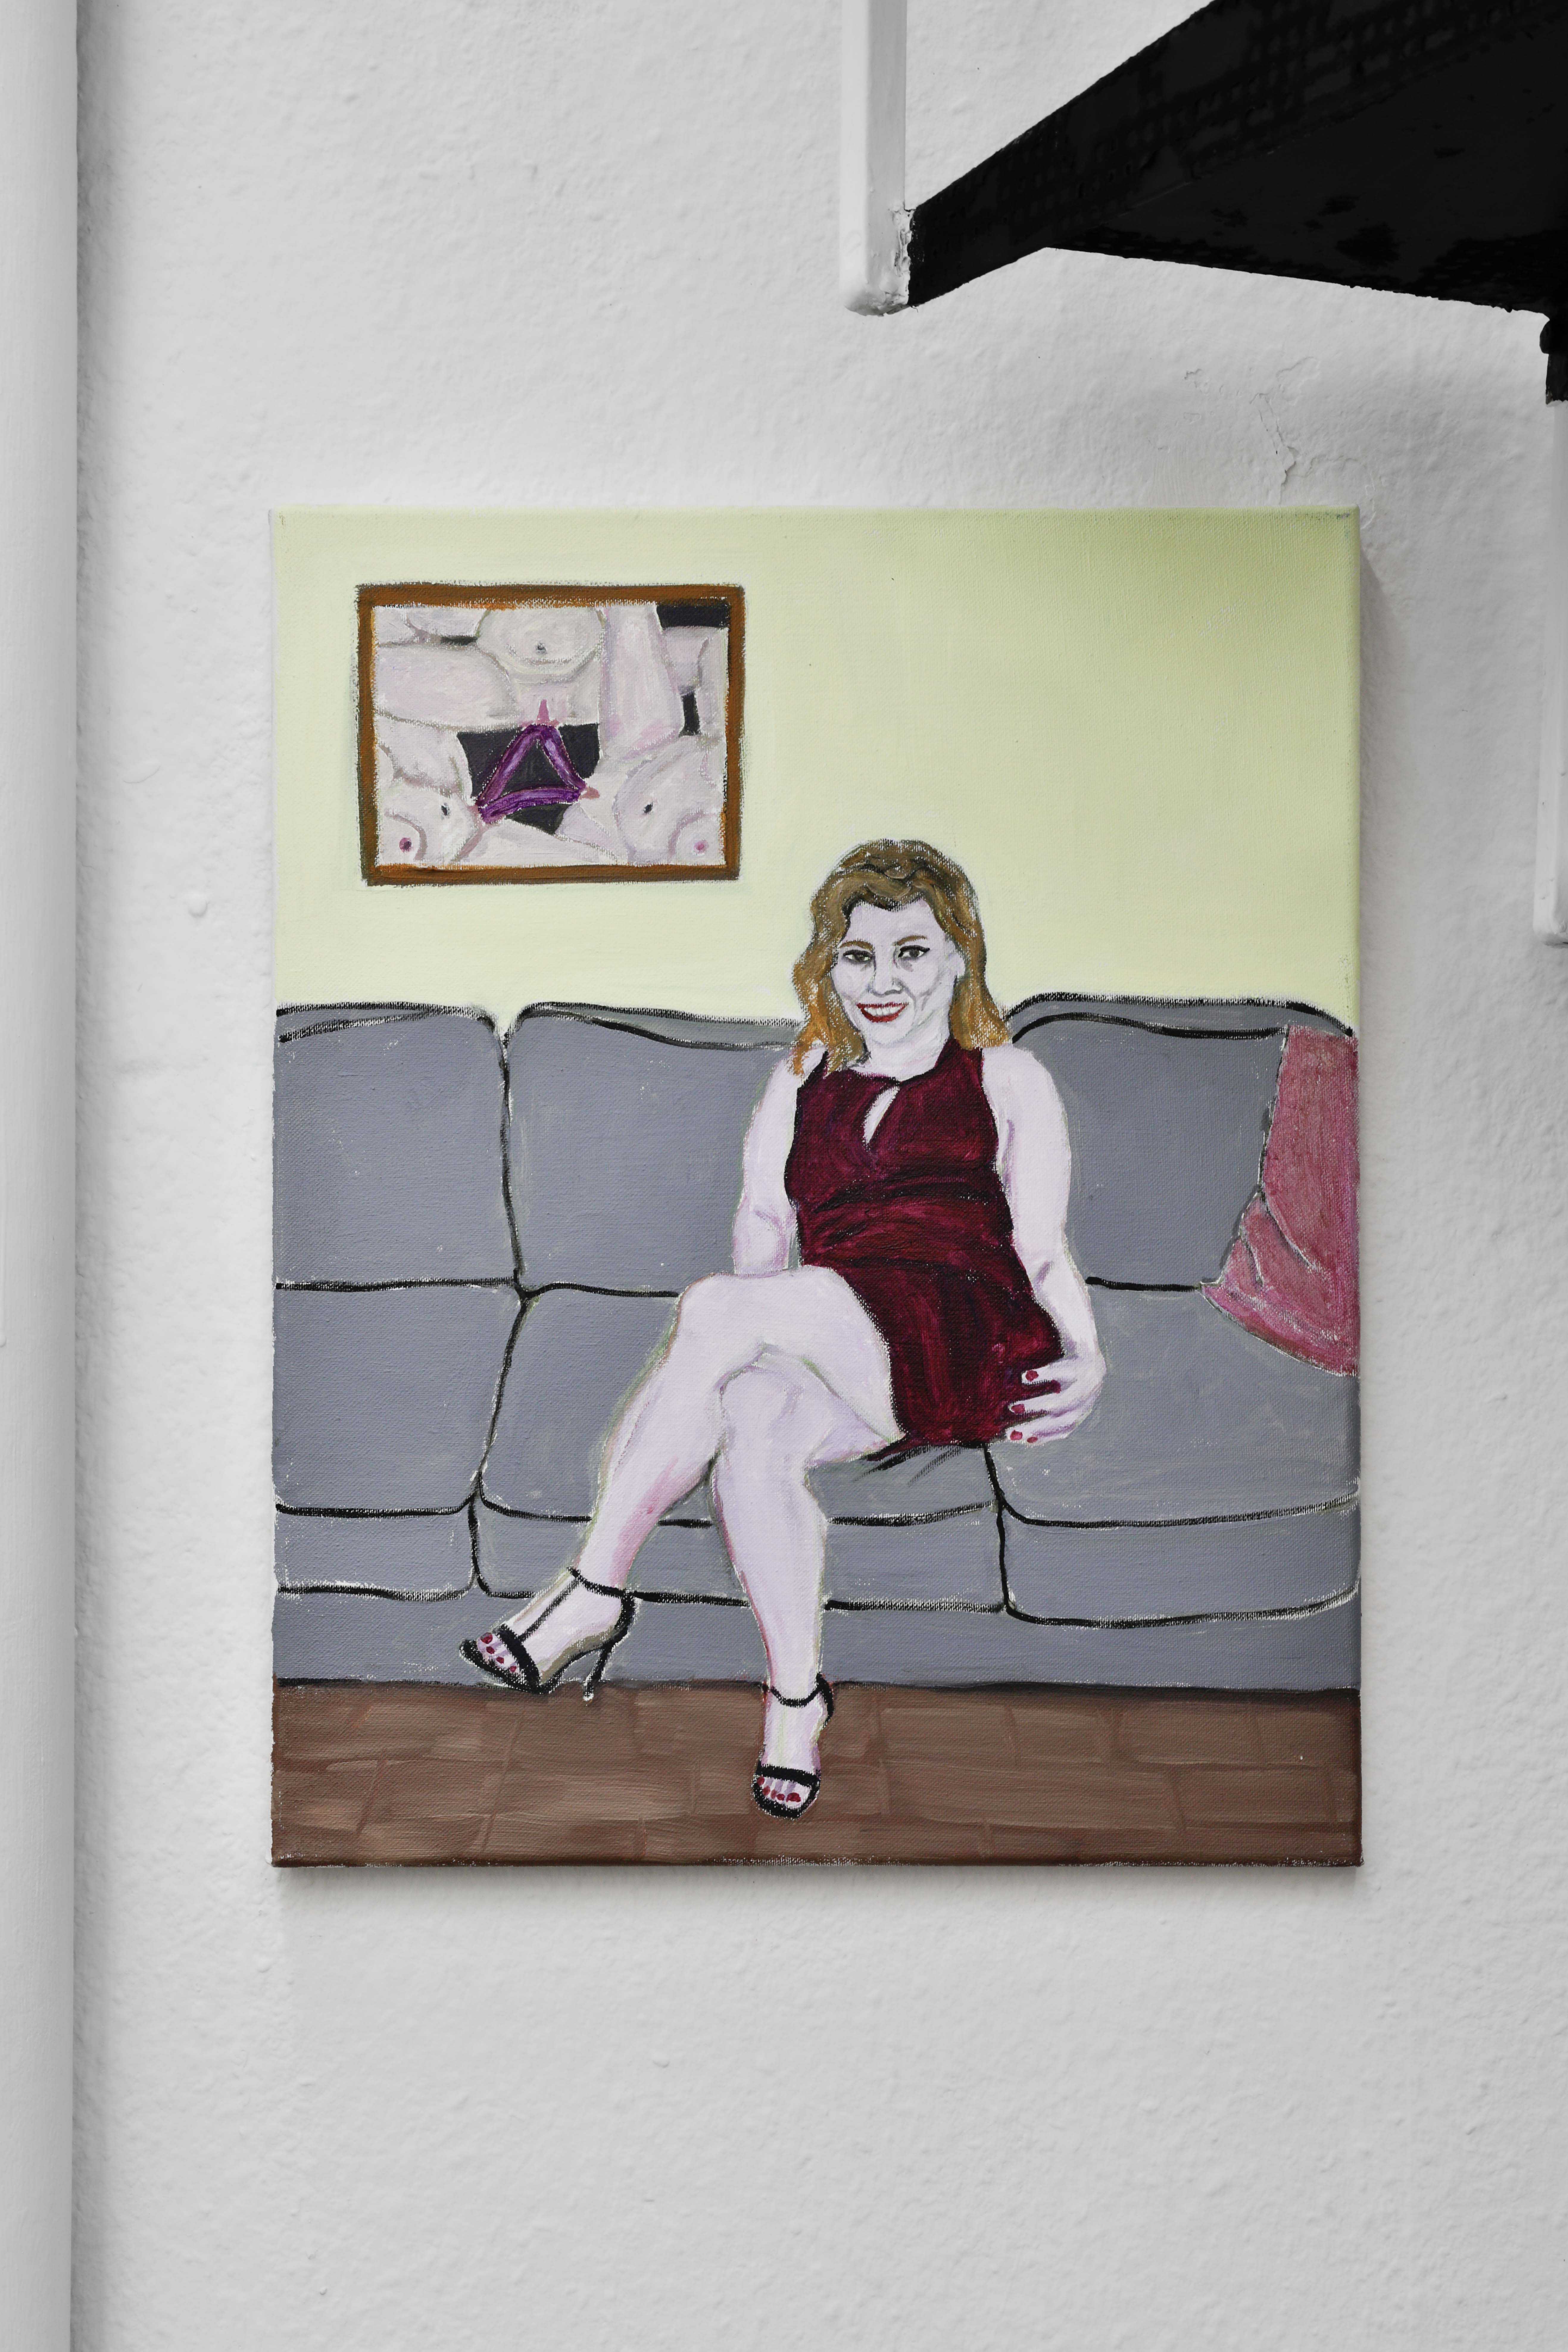 Anna MÃ¡ria BeÅˆovÃ¡, Everyday moments, 2020, Acrylic on canvas, 50cm x 40cm